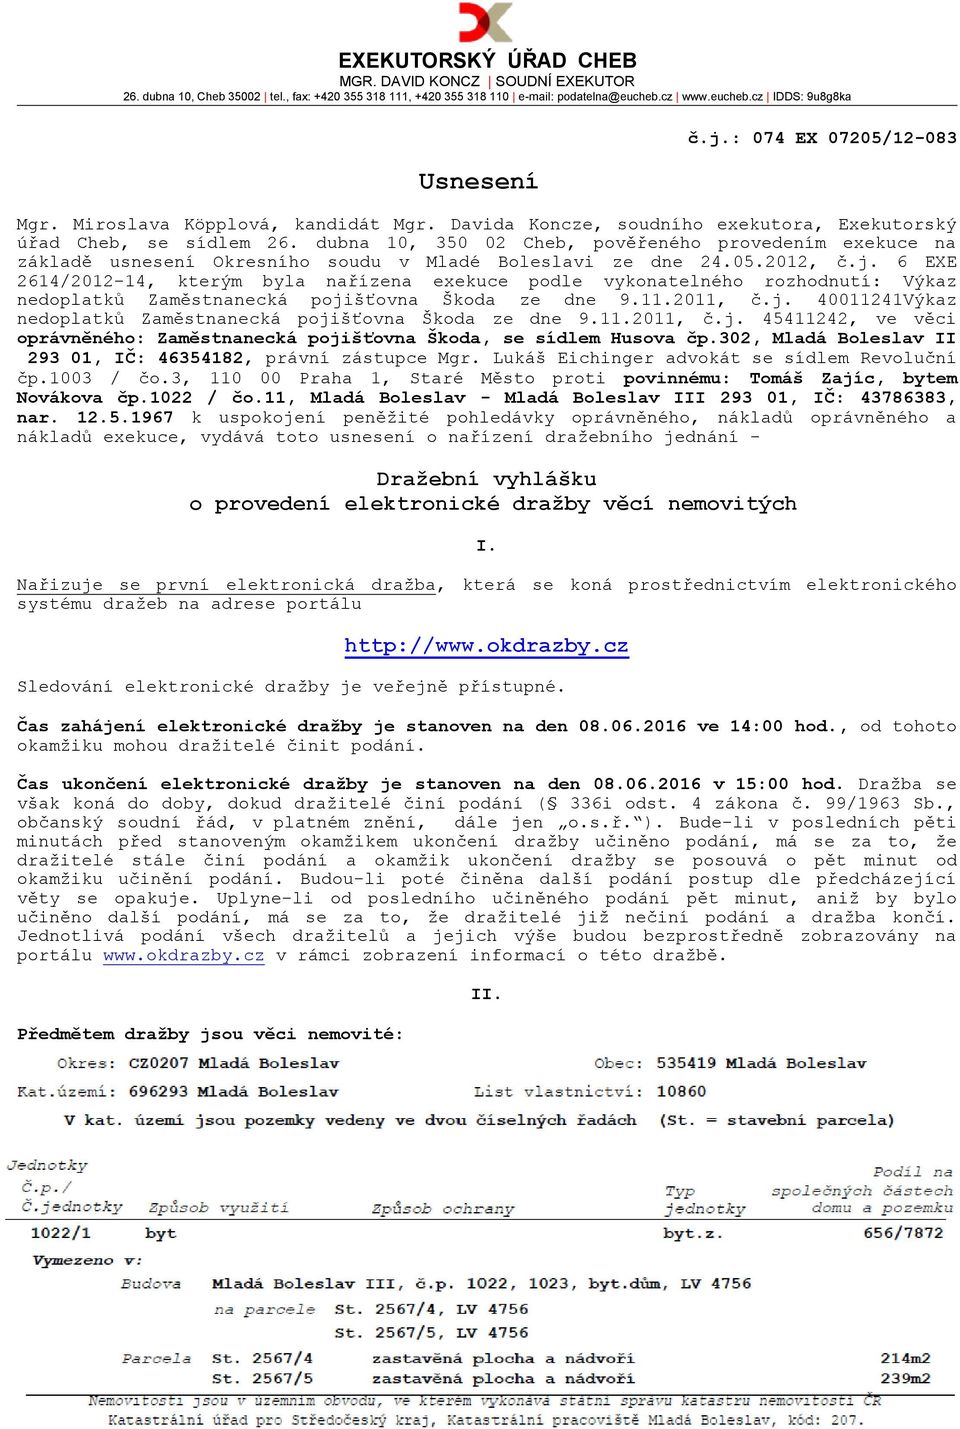 dubna 10, 350 02 Cheb, pověřeného provedením exekuce na základě usnesení Okresního soudu v Mladé Boleslavi ze dne 24.05.2012, č.j.